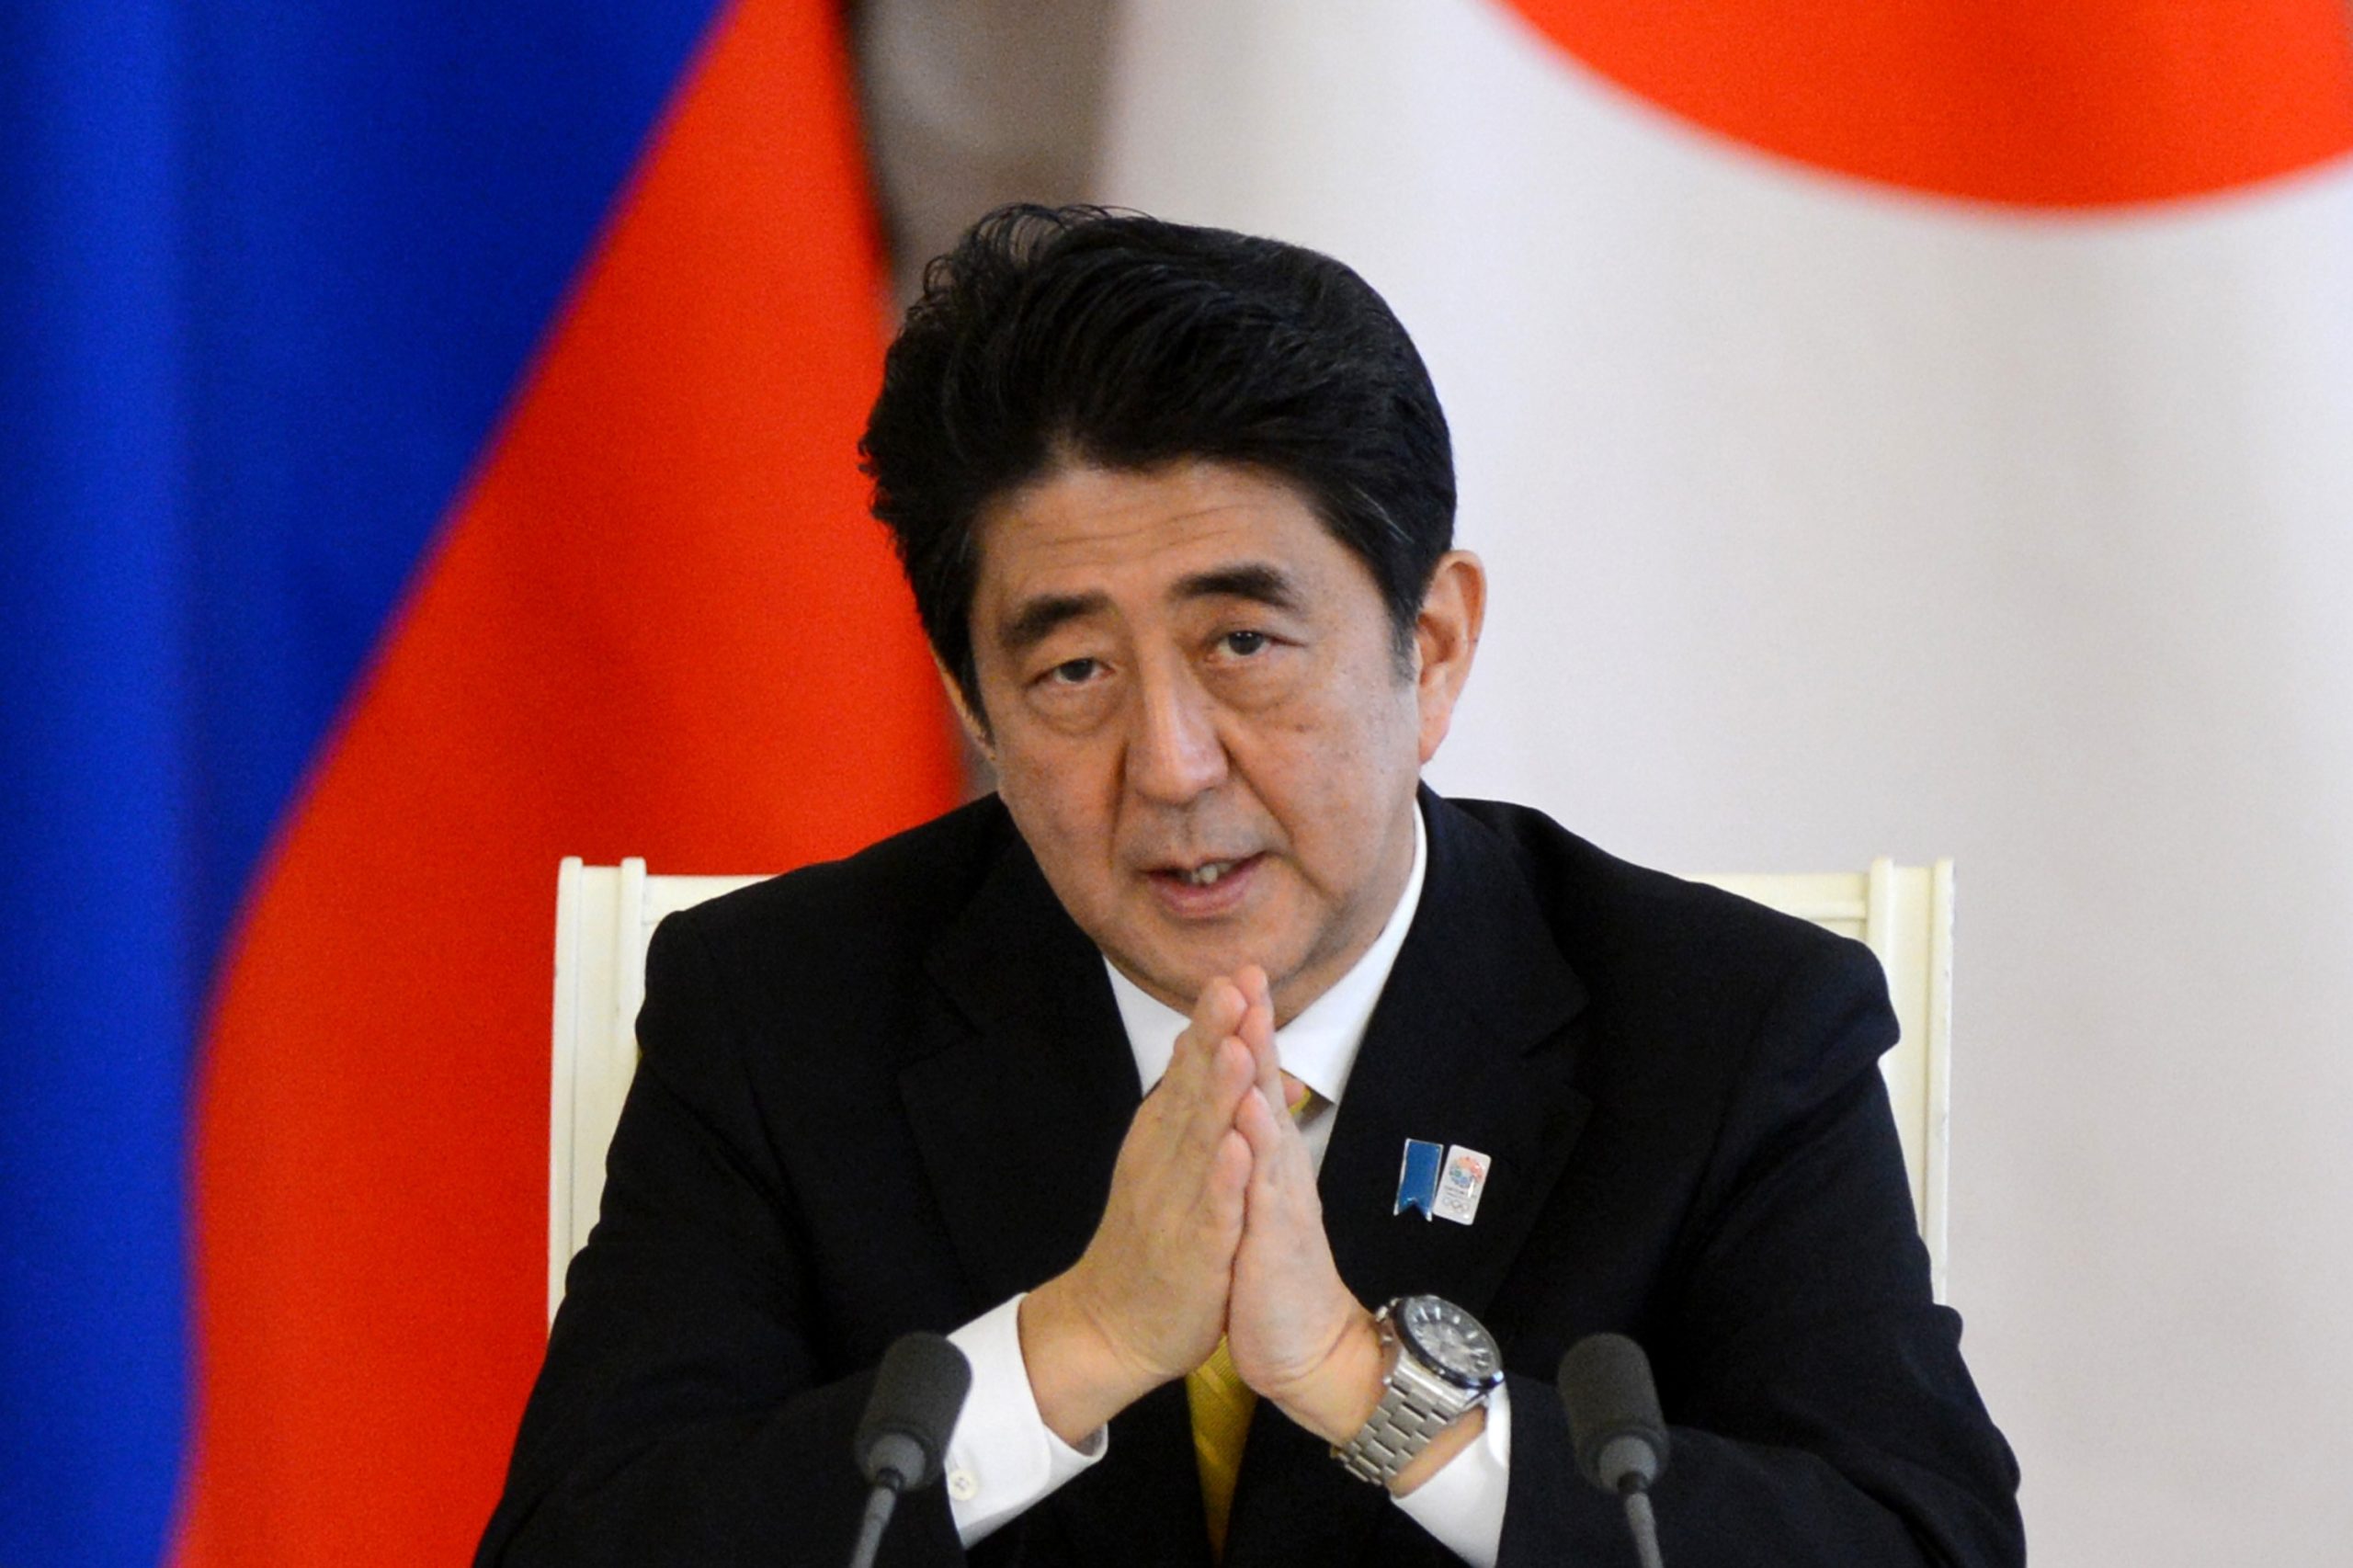 Ο Σίνζο Άμπε κέρδισε ξανά τις εκλογές στην Ιαπωνία αν και χωρίς πλειοψηφία